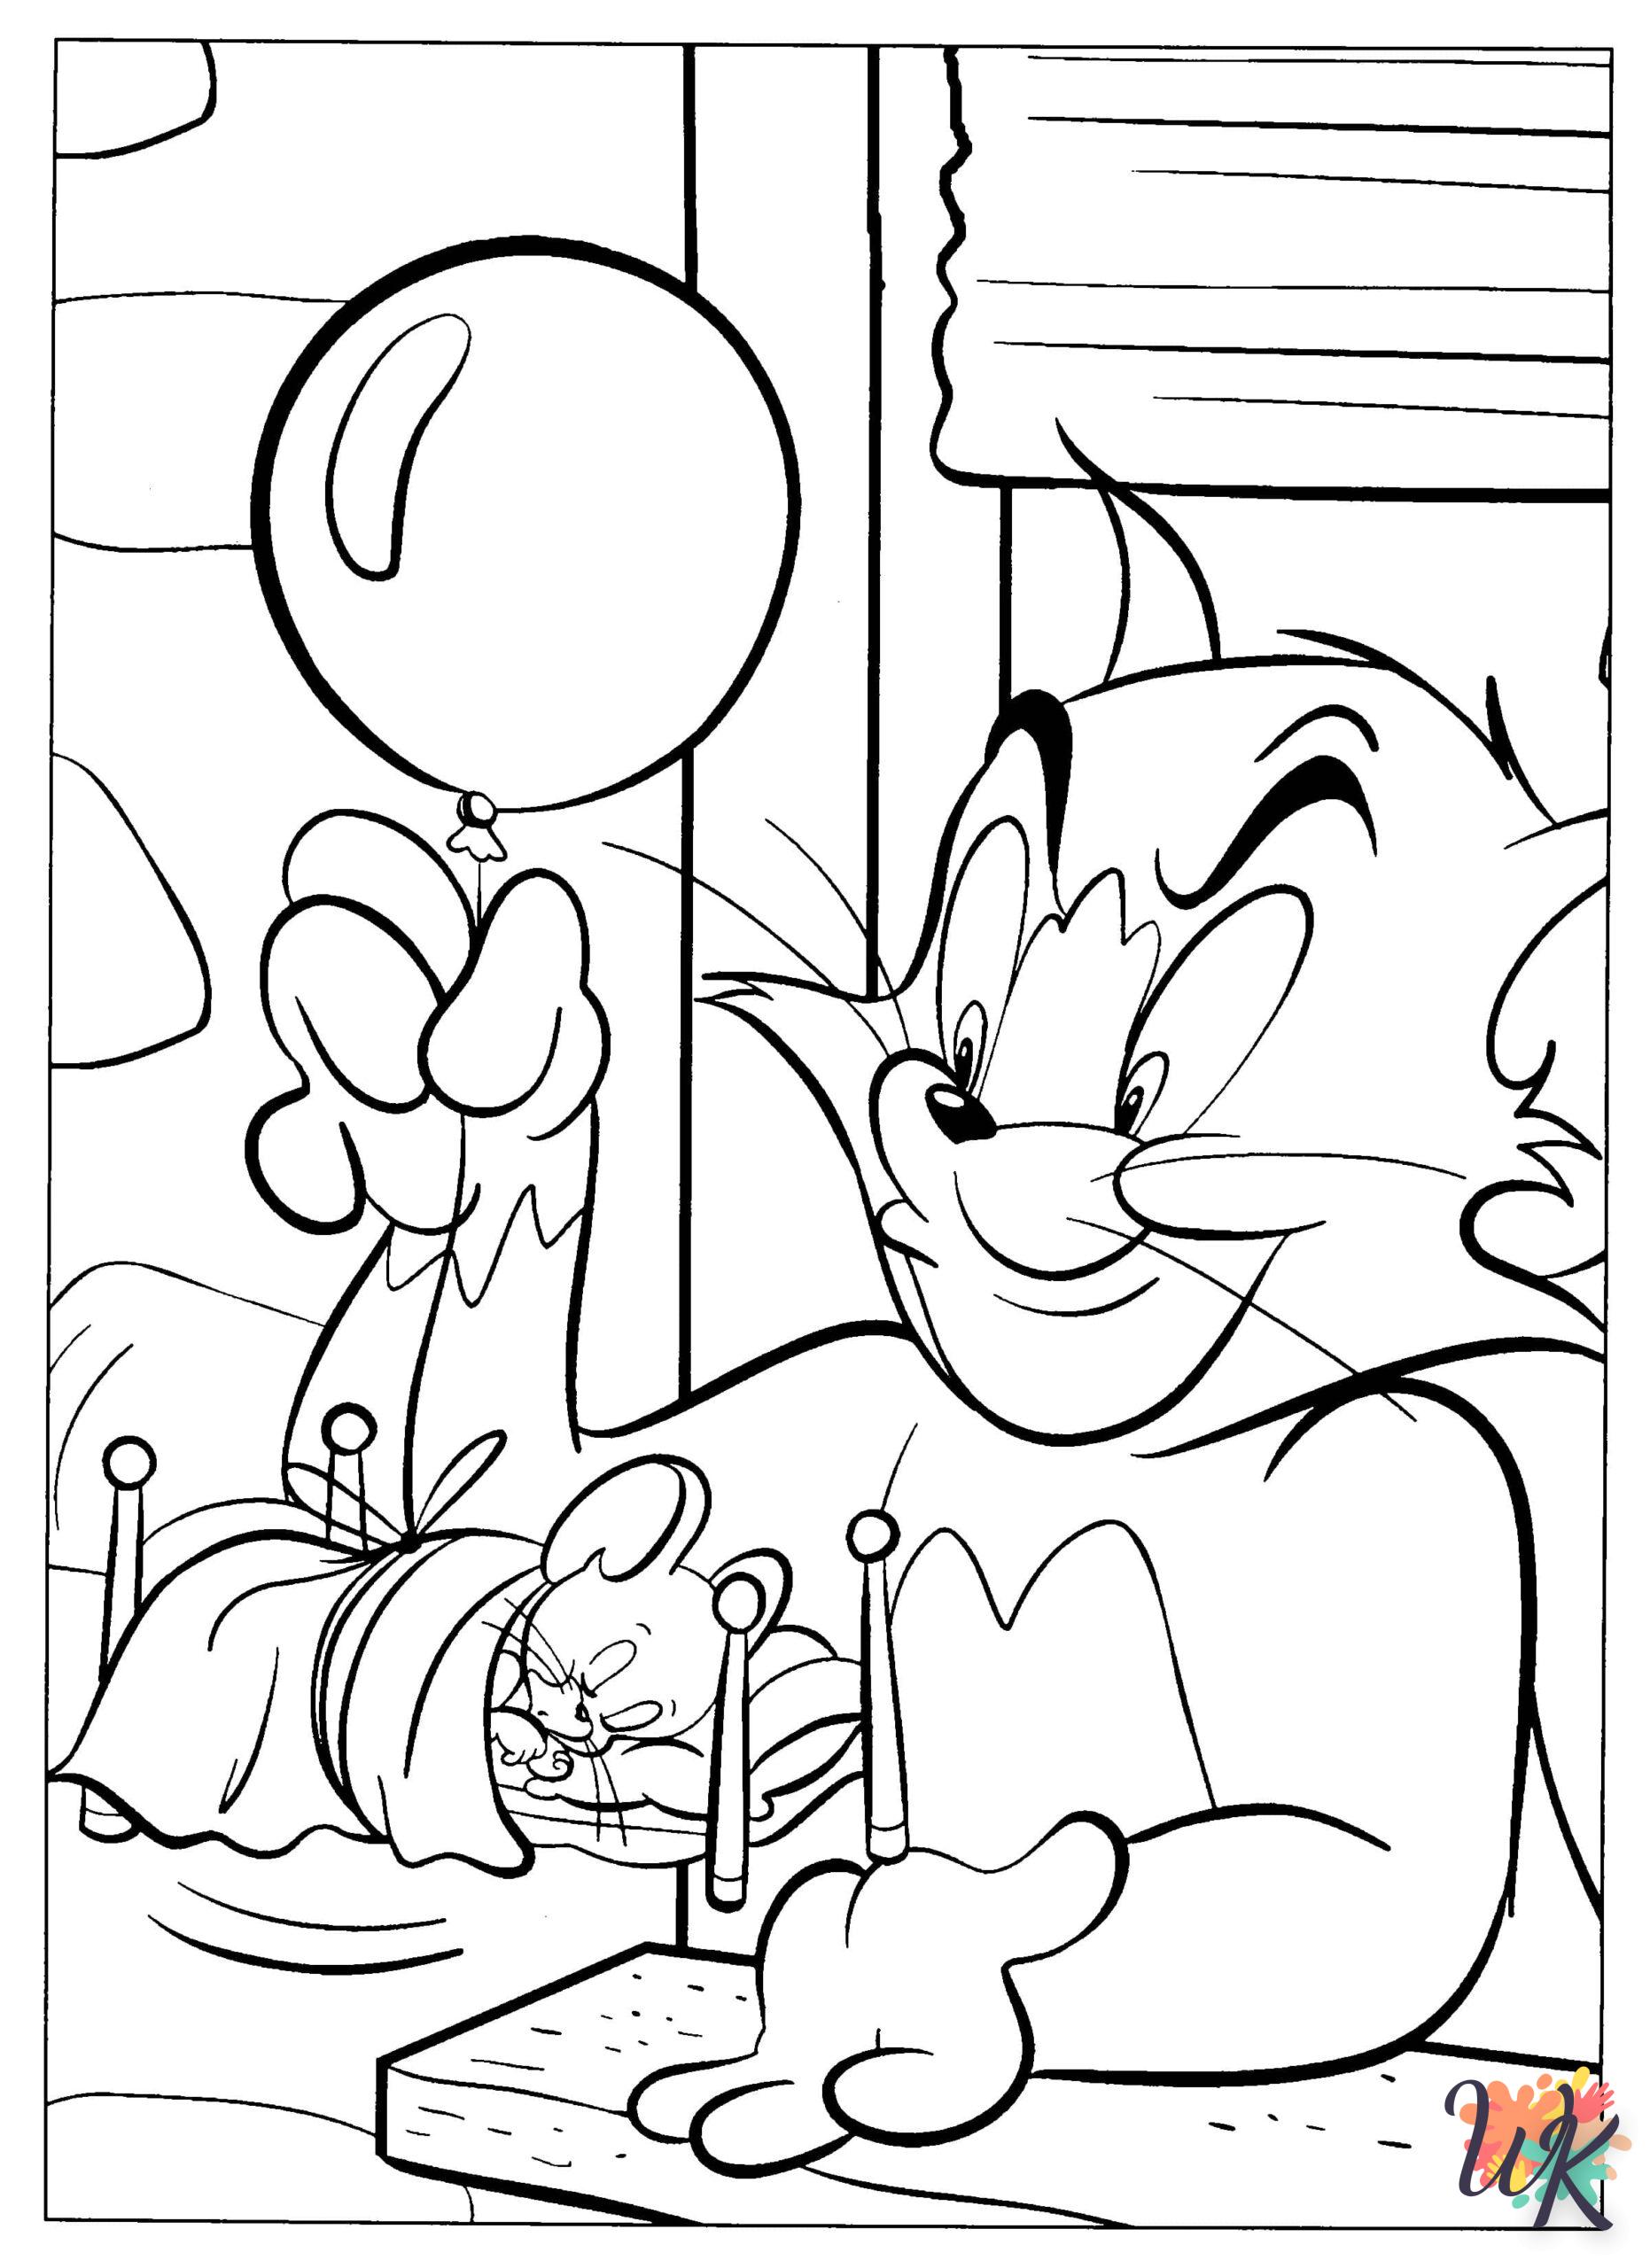 imprimer coloriage Tom et Jerry